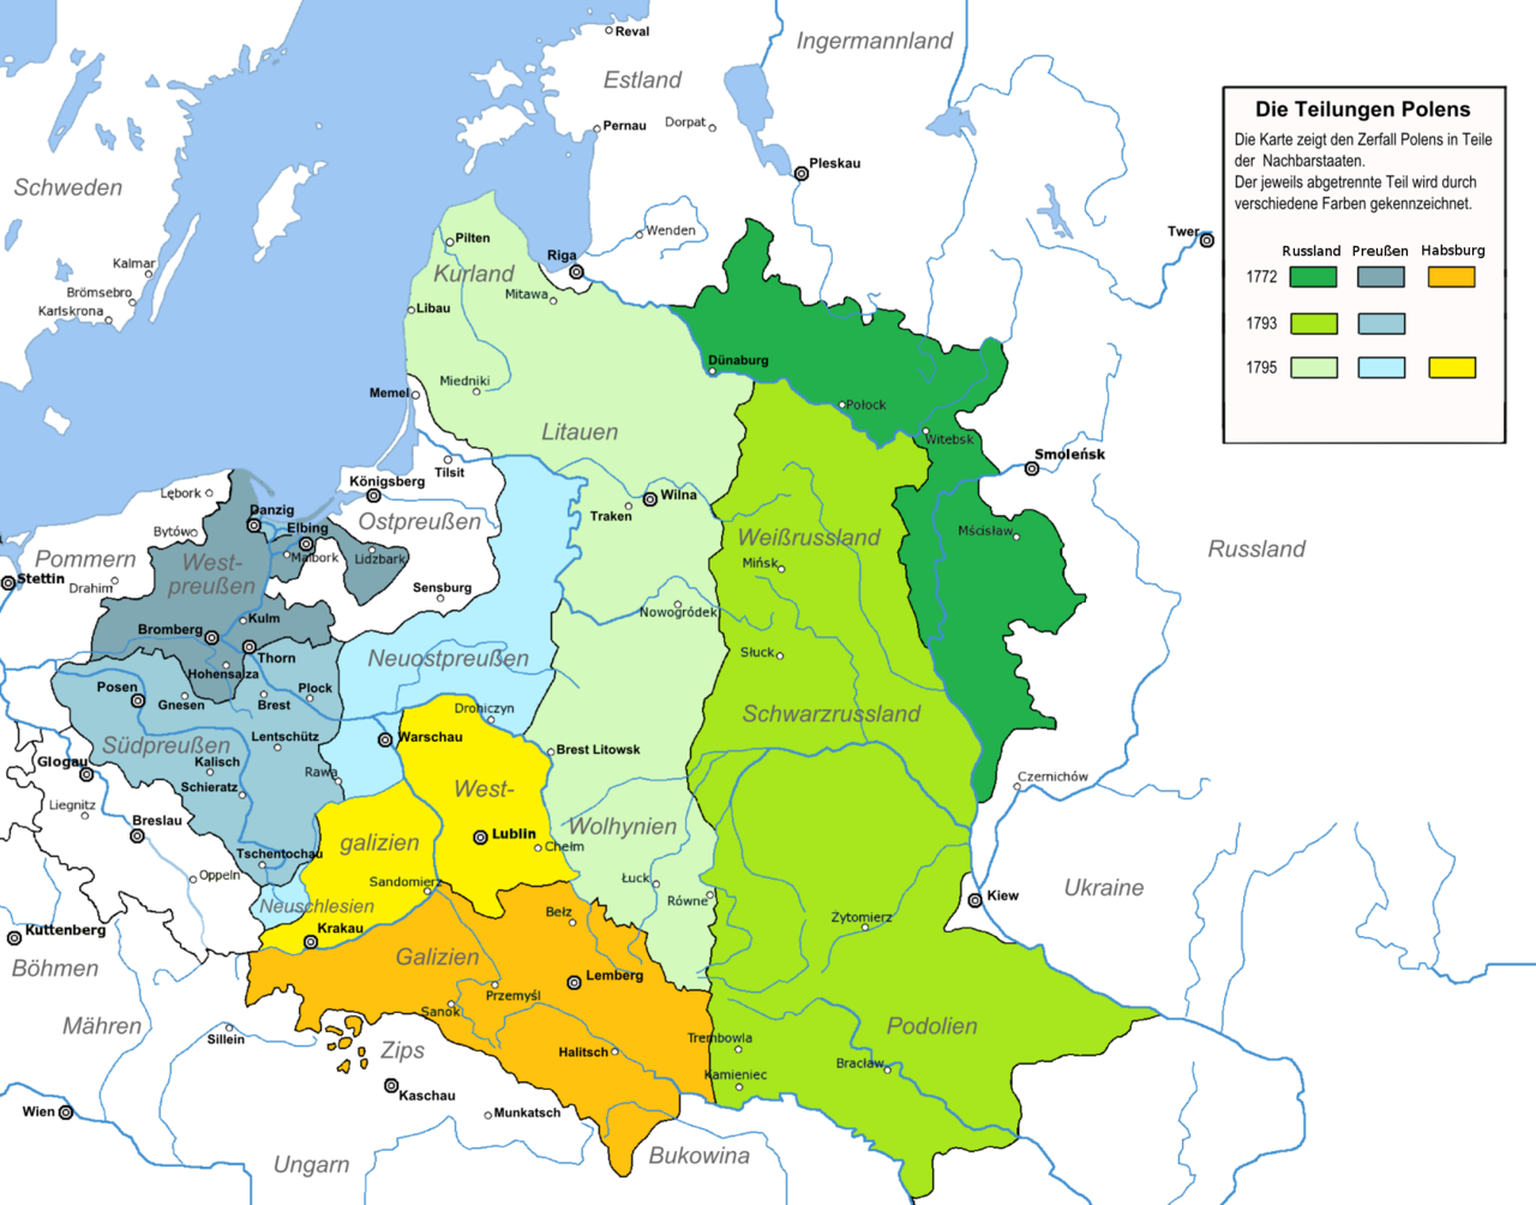 Ende des 18. Jahrhundert wurde Polen durch seine Nachbarstaaten Russland, Preussen und Österreich drei Mal geteilt, so dass am Ende nichts mehr davon übrig blieb. Erst nach dem Ersten Weltkrieg sollte Polen als souveräner Staat wiedererstehen.